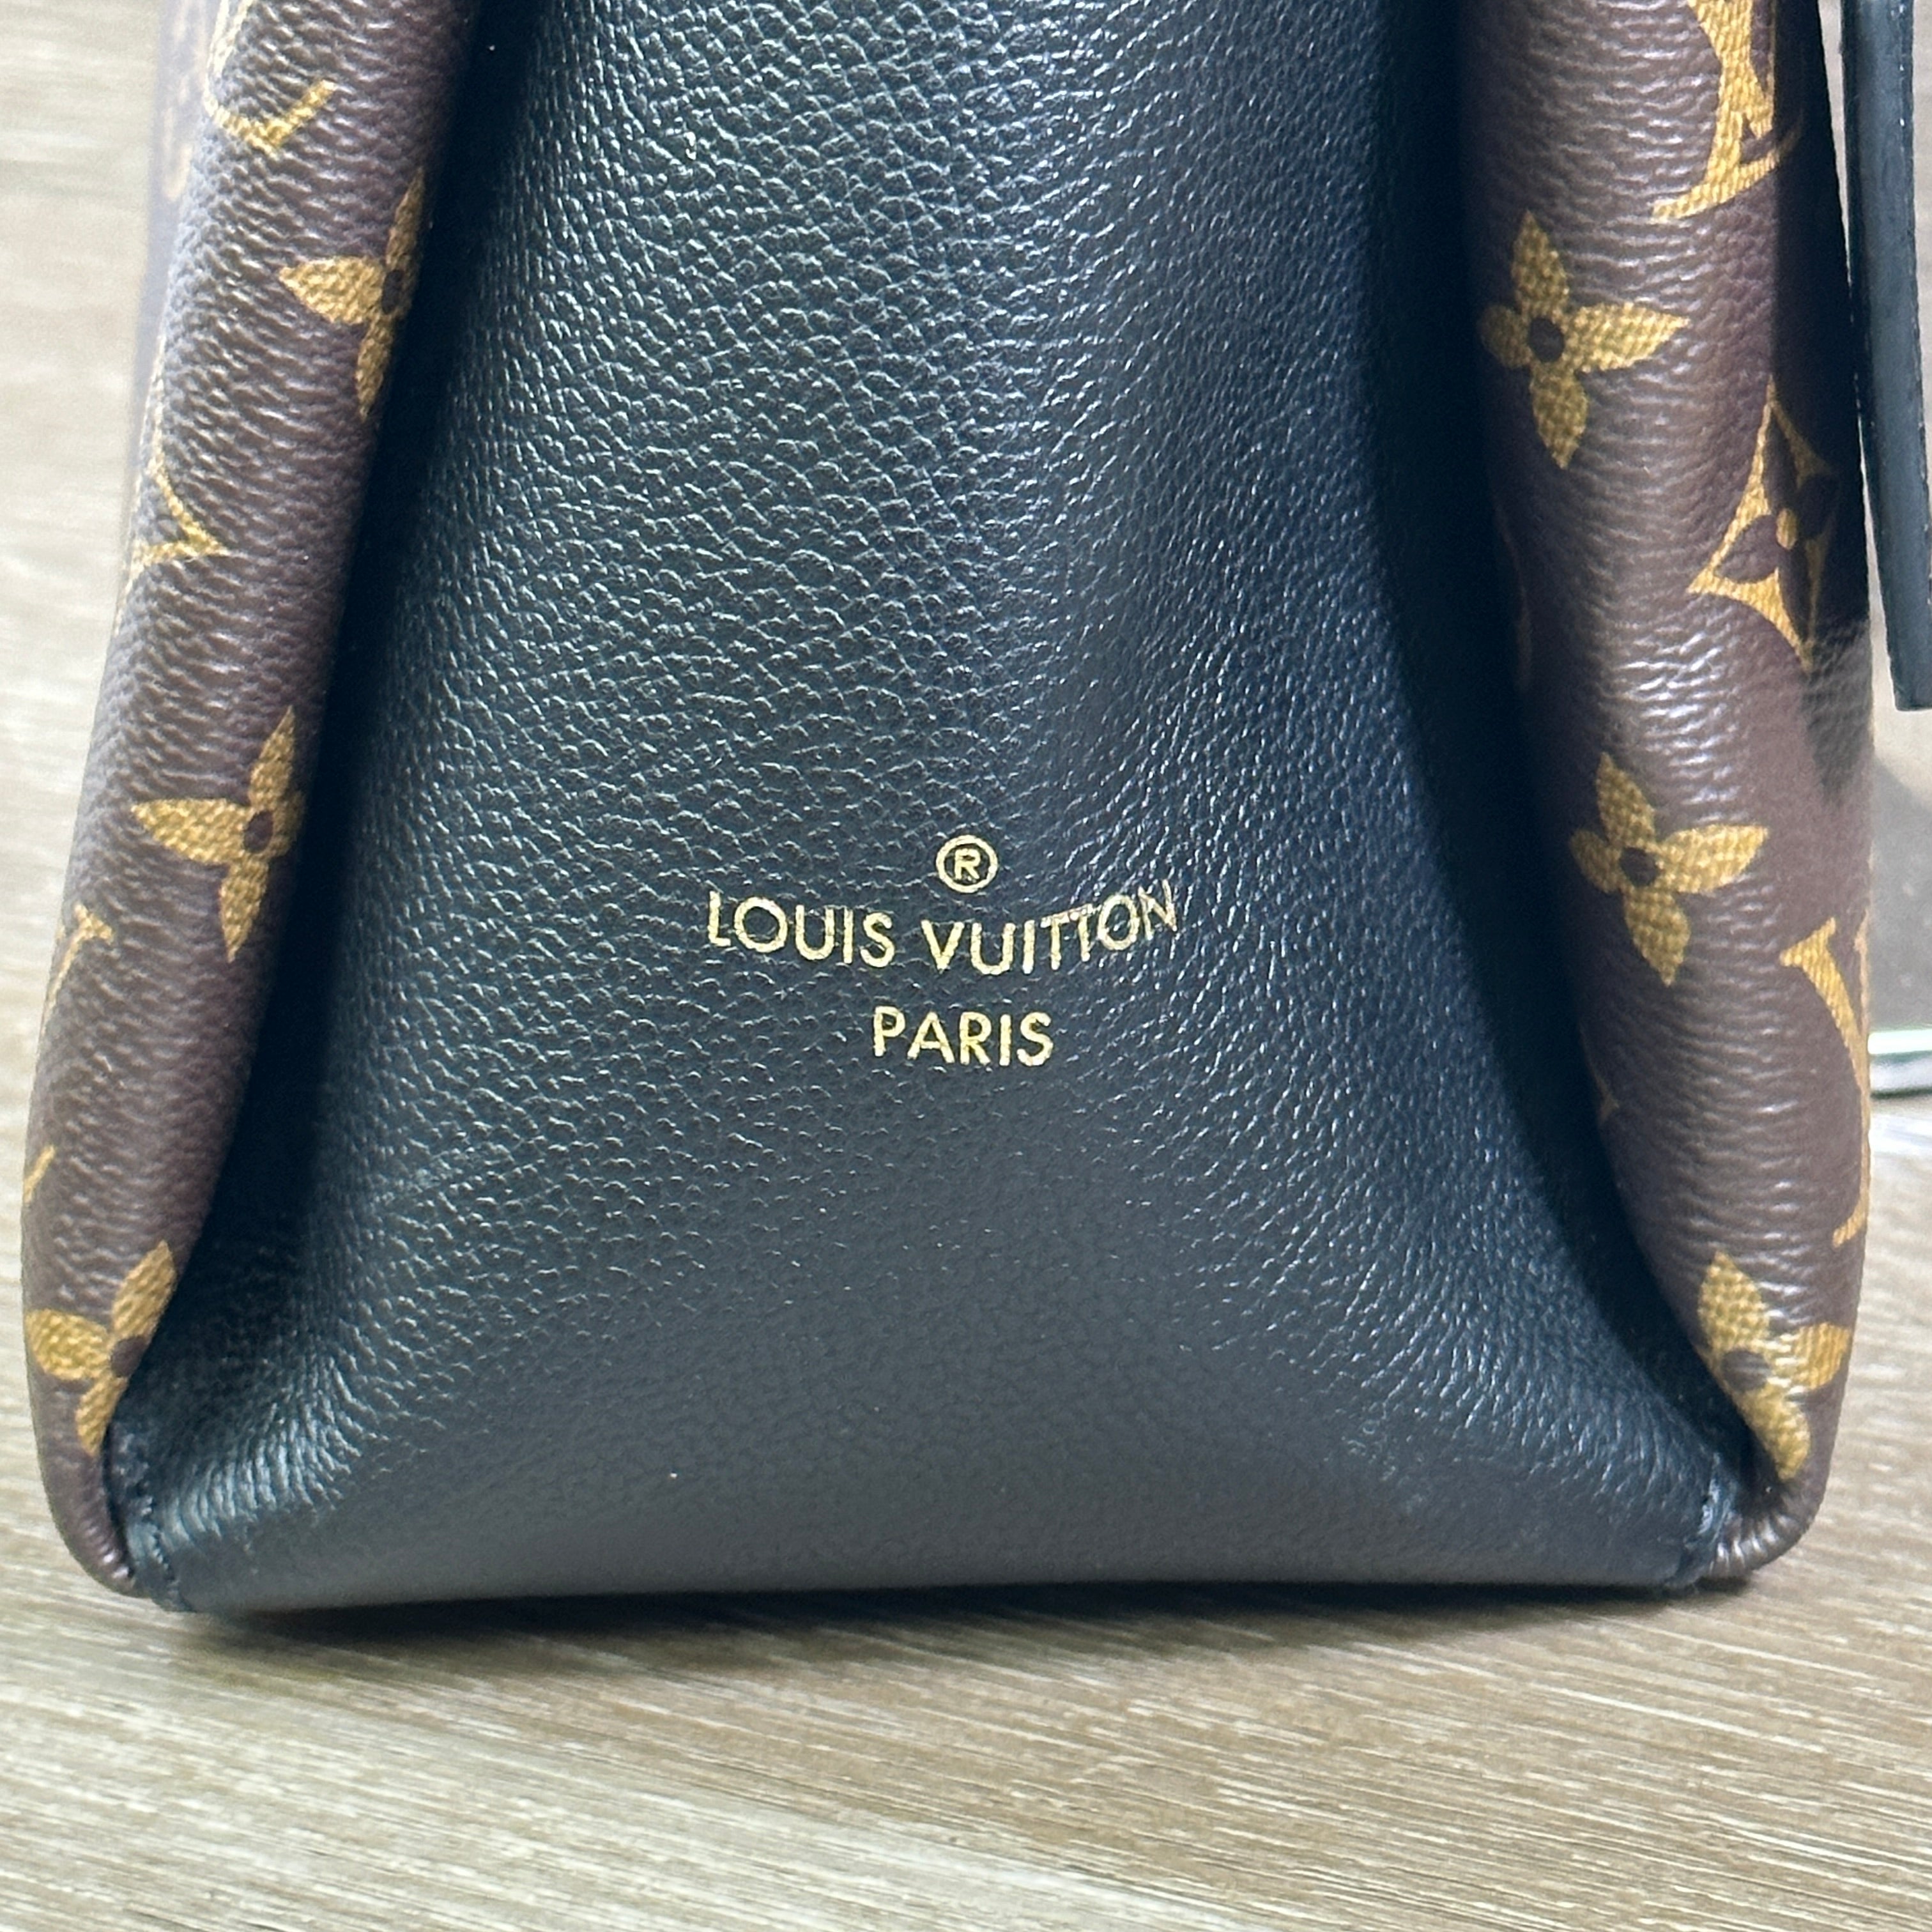 Louis Vuitton's Monogram Congo MM messenger bag / computer bag authentic